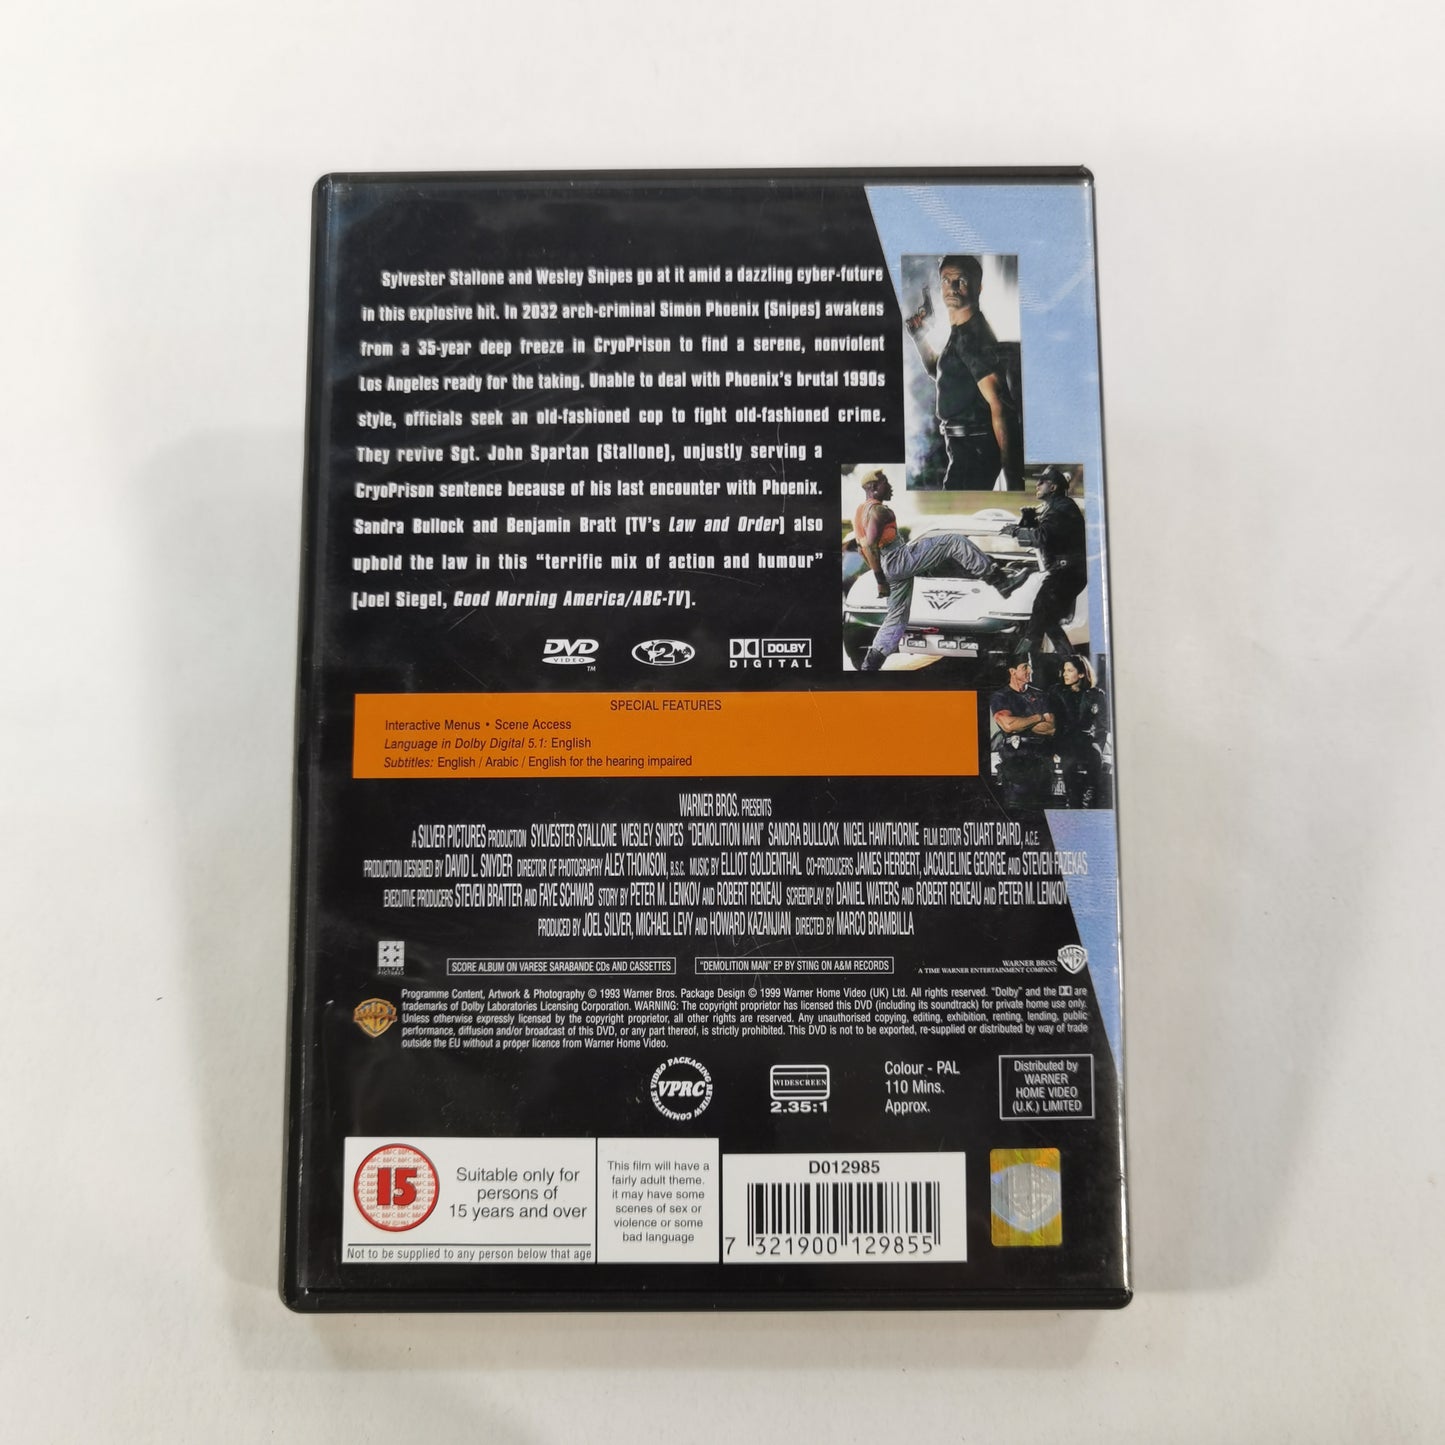 Demolition Man (1993) - DVD UK 1999